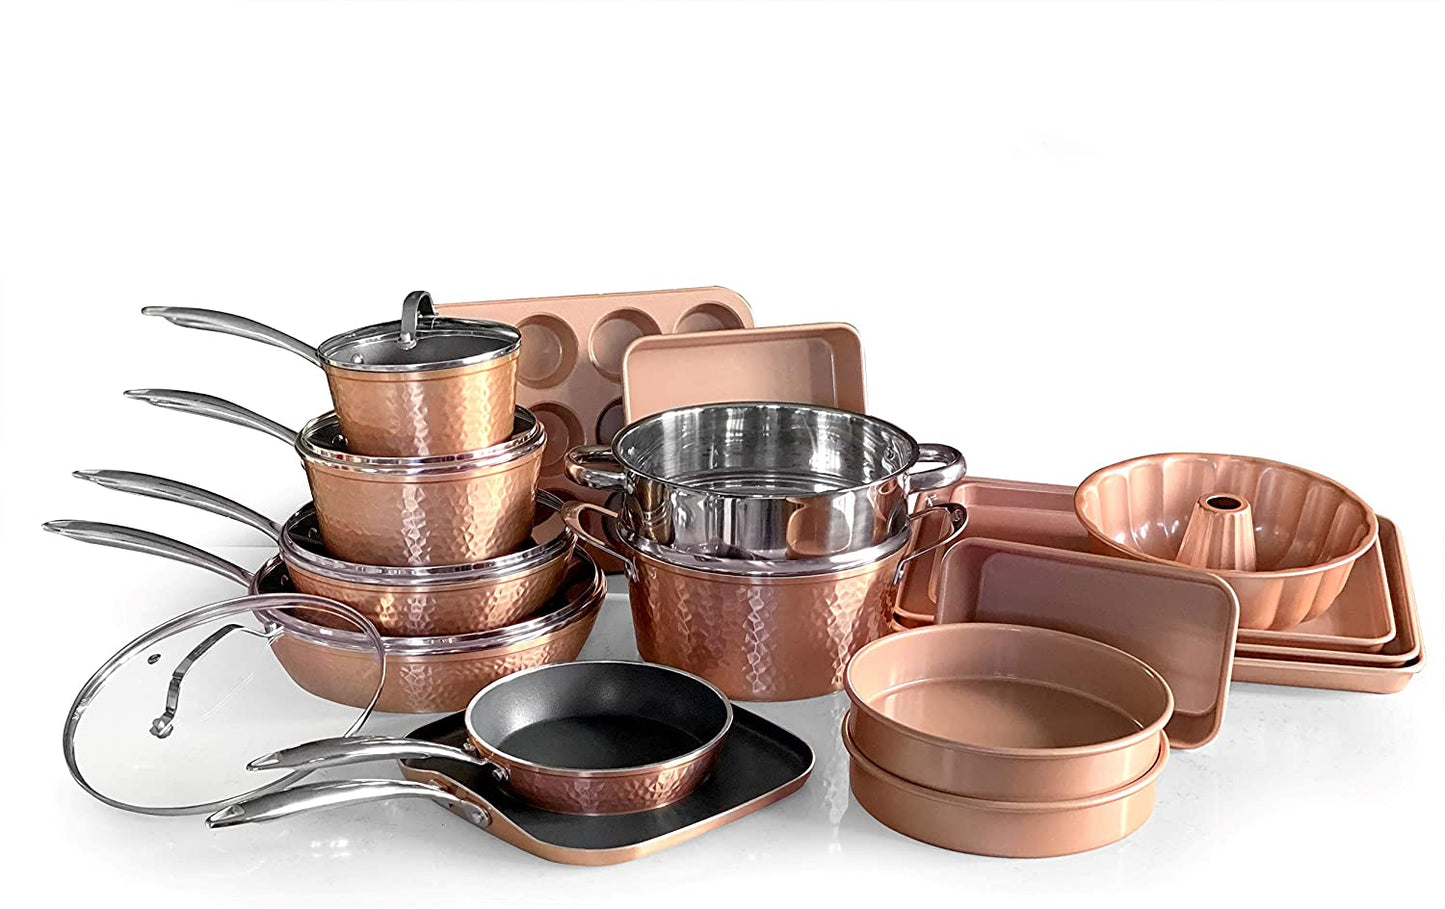 Hammered 10 Piece Cookware Set, Oven Safe, Dishwasher Safe - Elegant Pots &  Pans